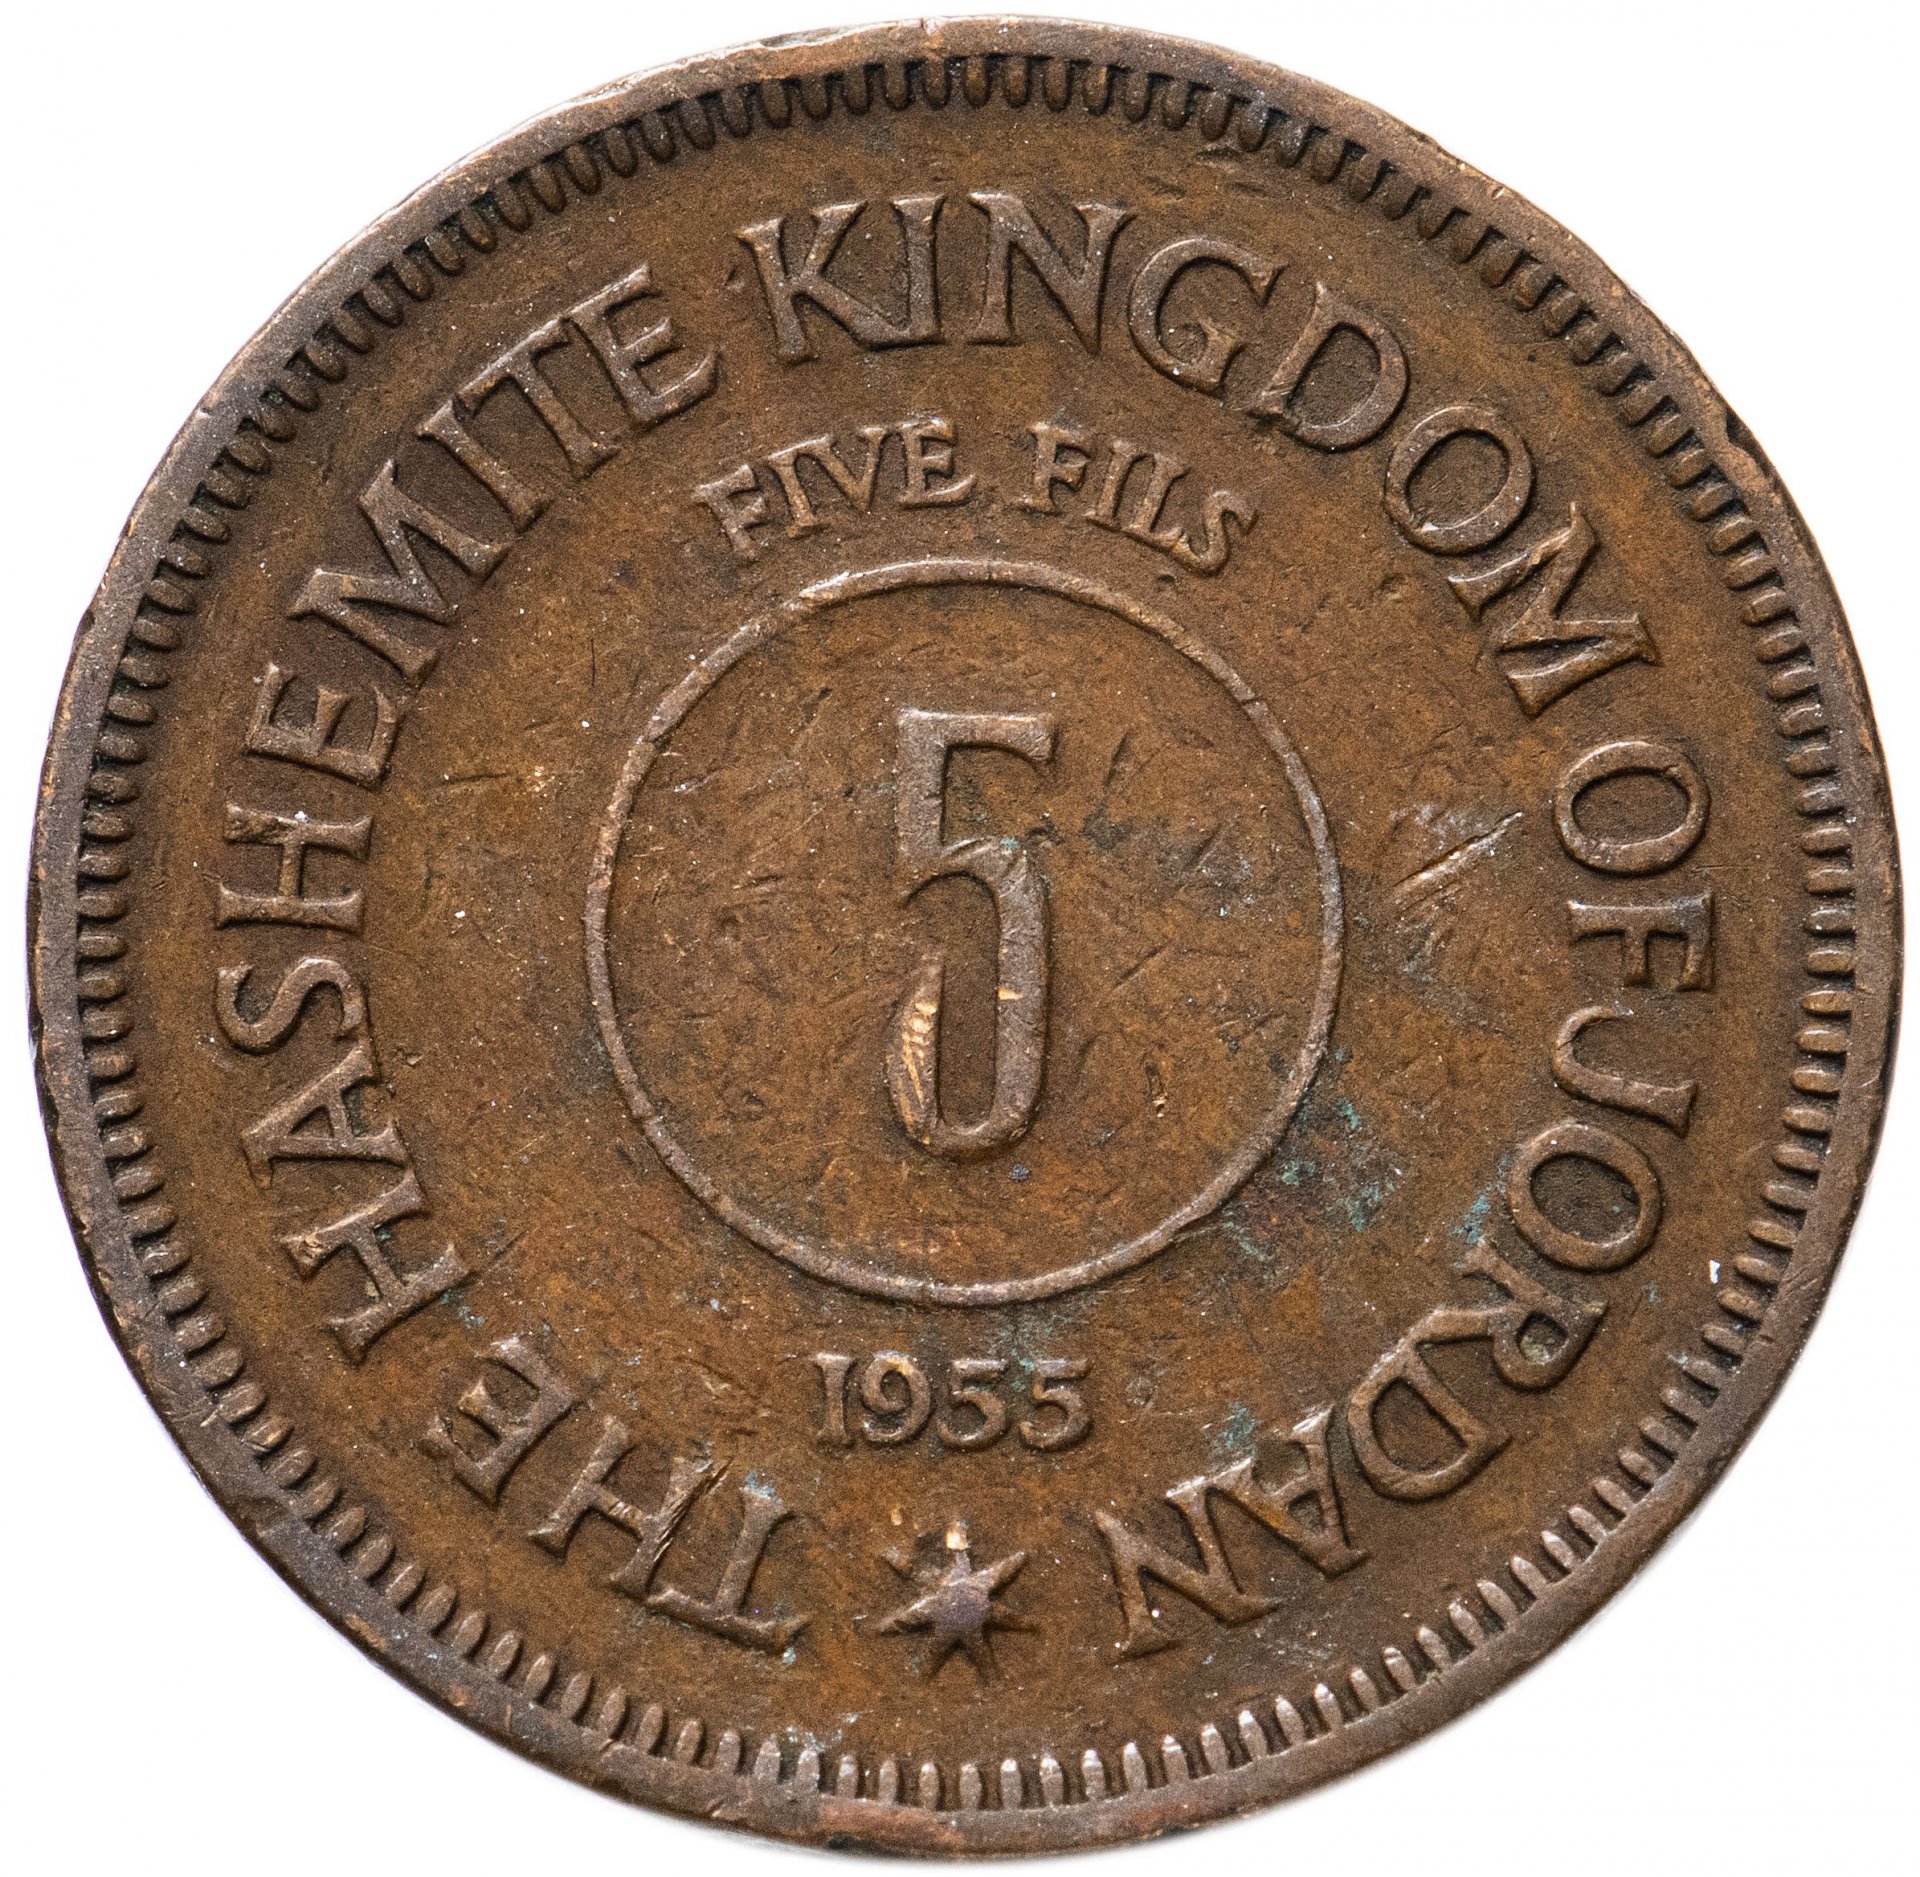 C bc v. 1876 W 1 цент. Нидерланды 1860. Монеты Нидерландов каталог цены.